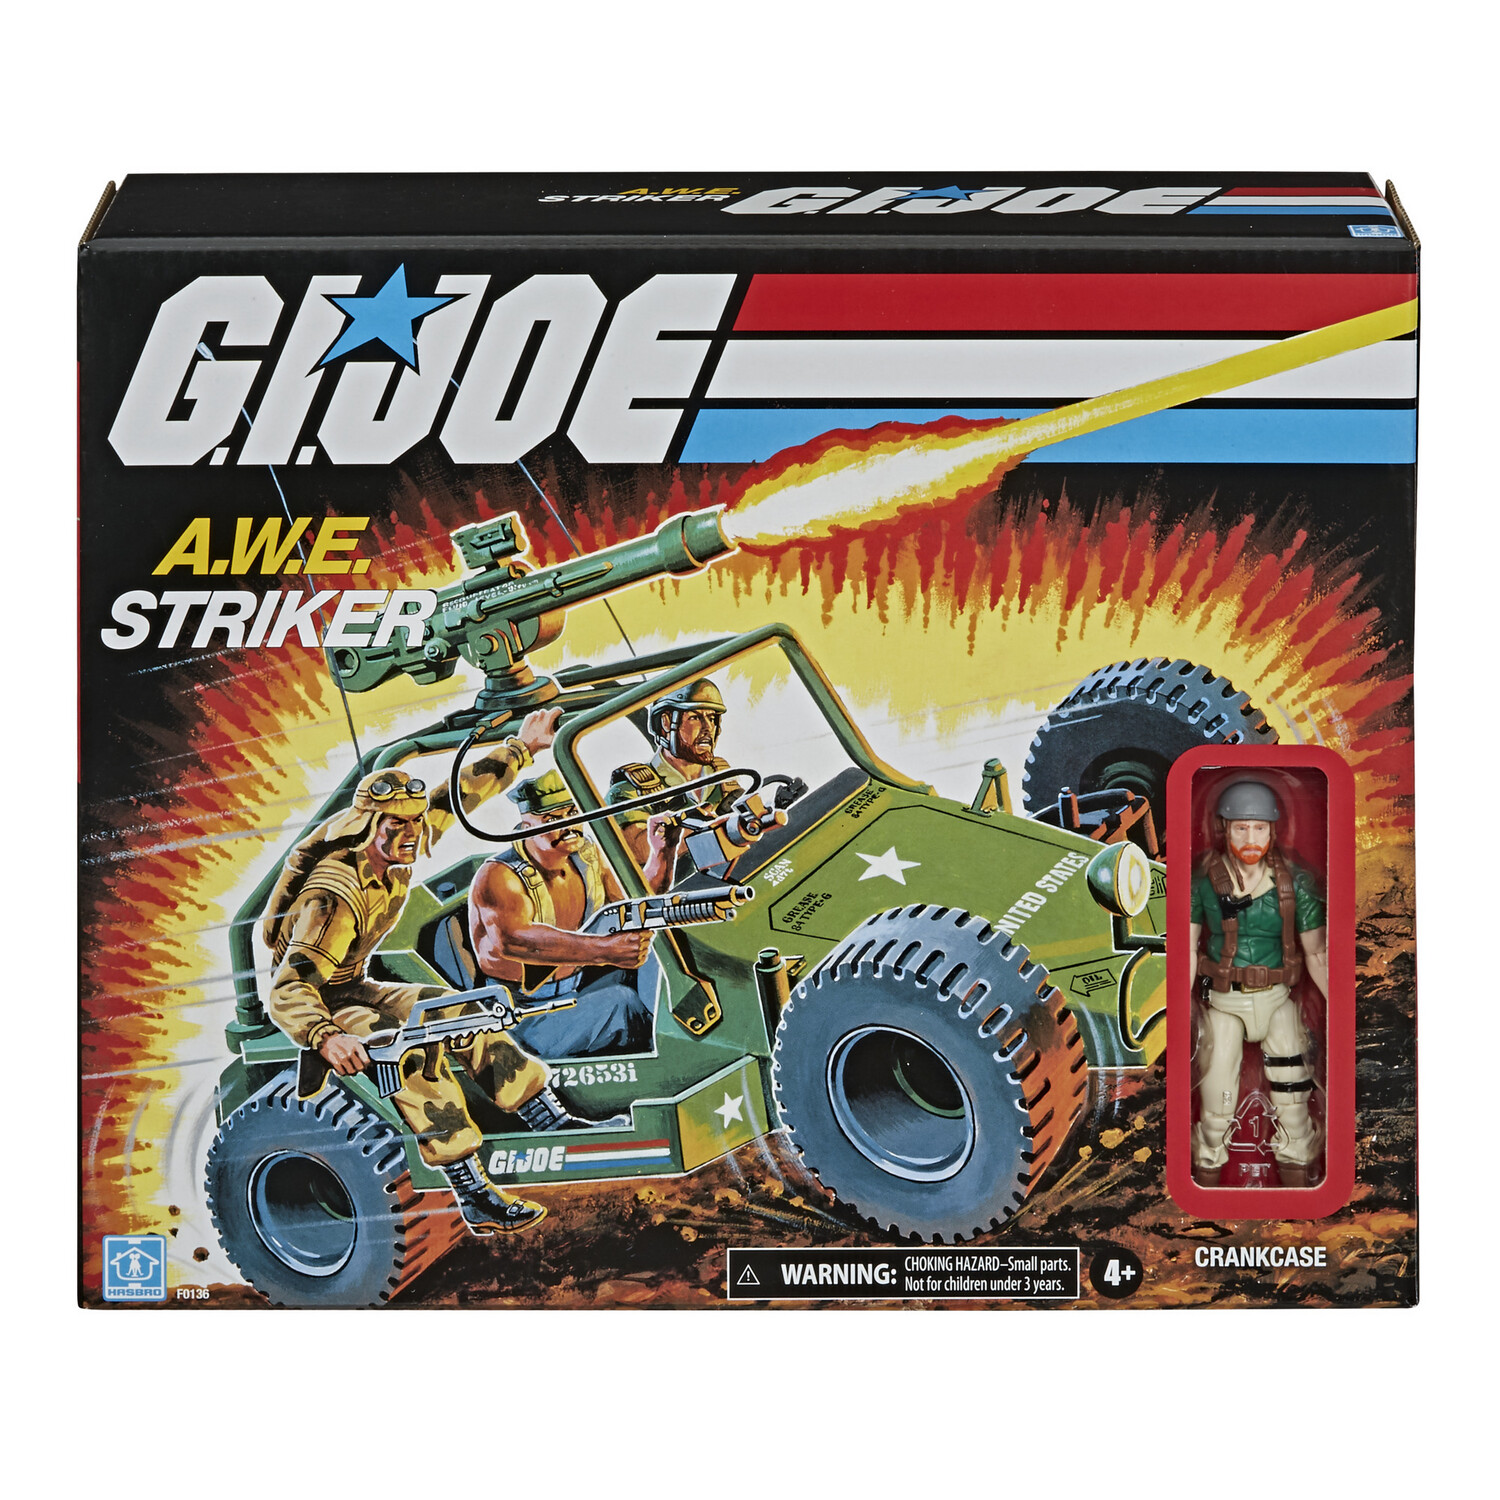 Pre-order: G.I. Joe Retro Collection A.W.E. Striker